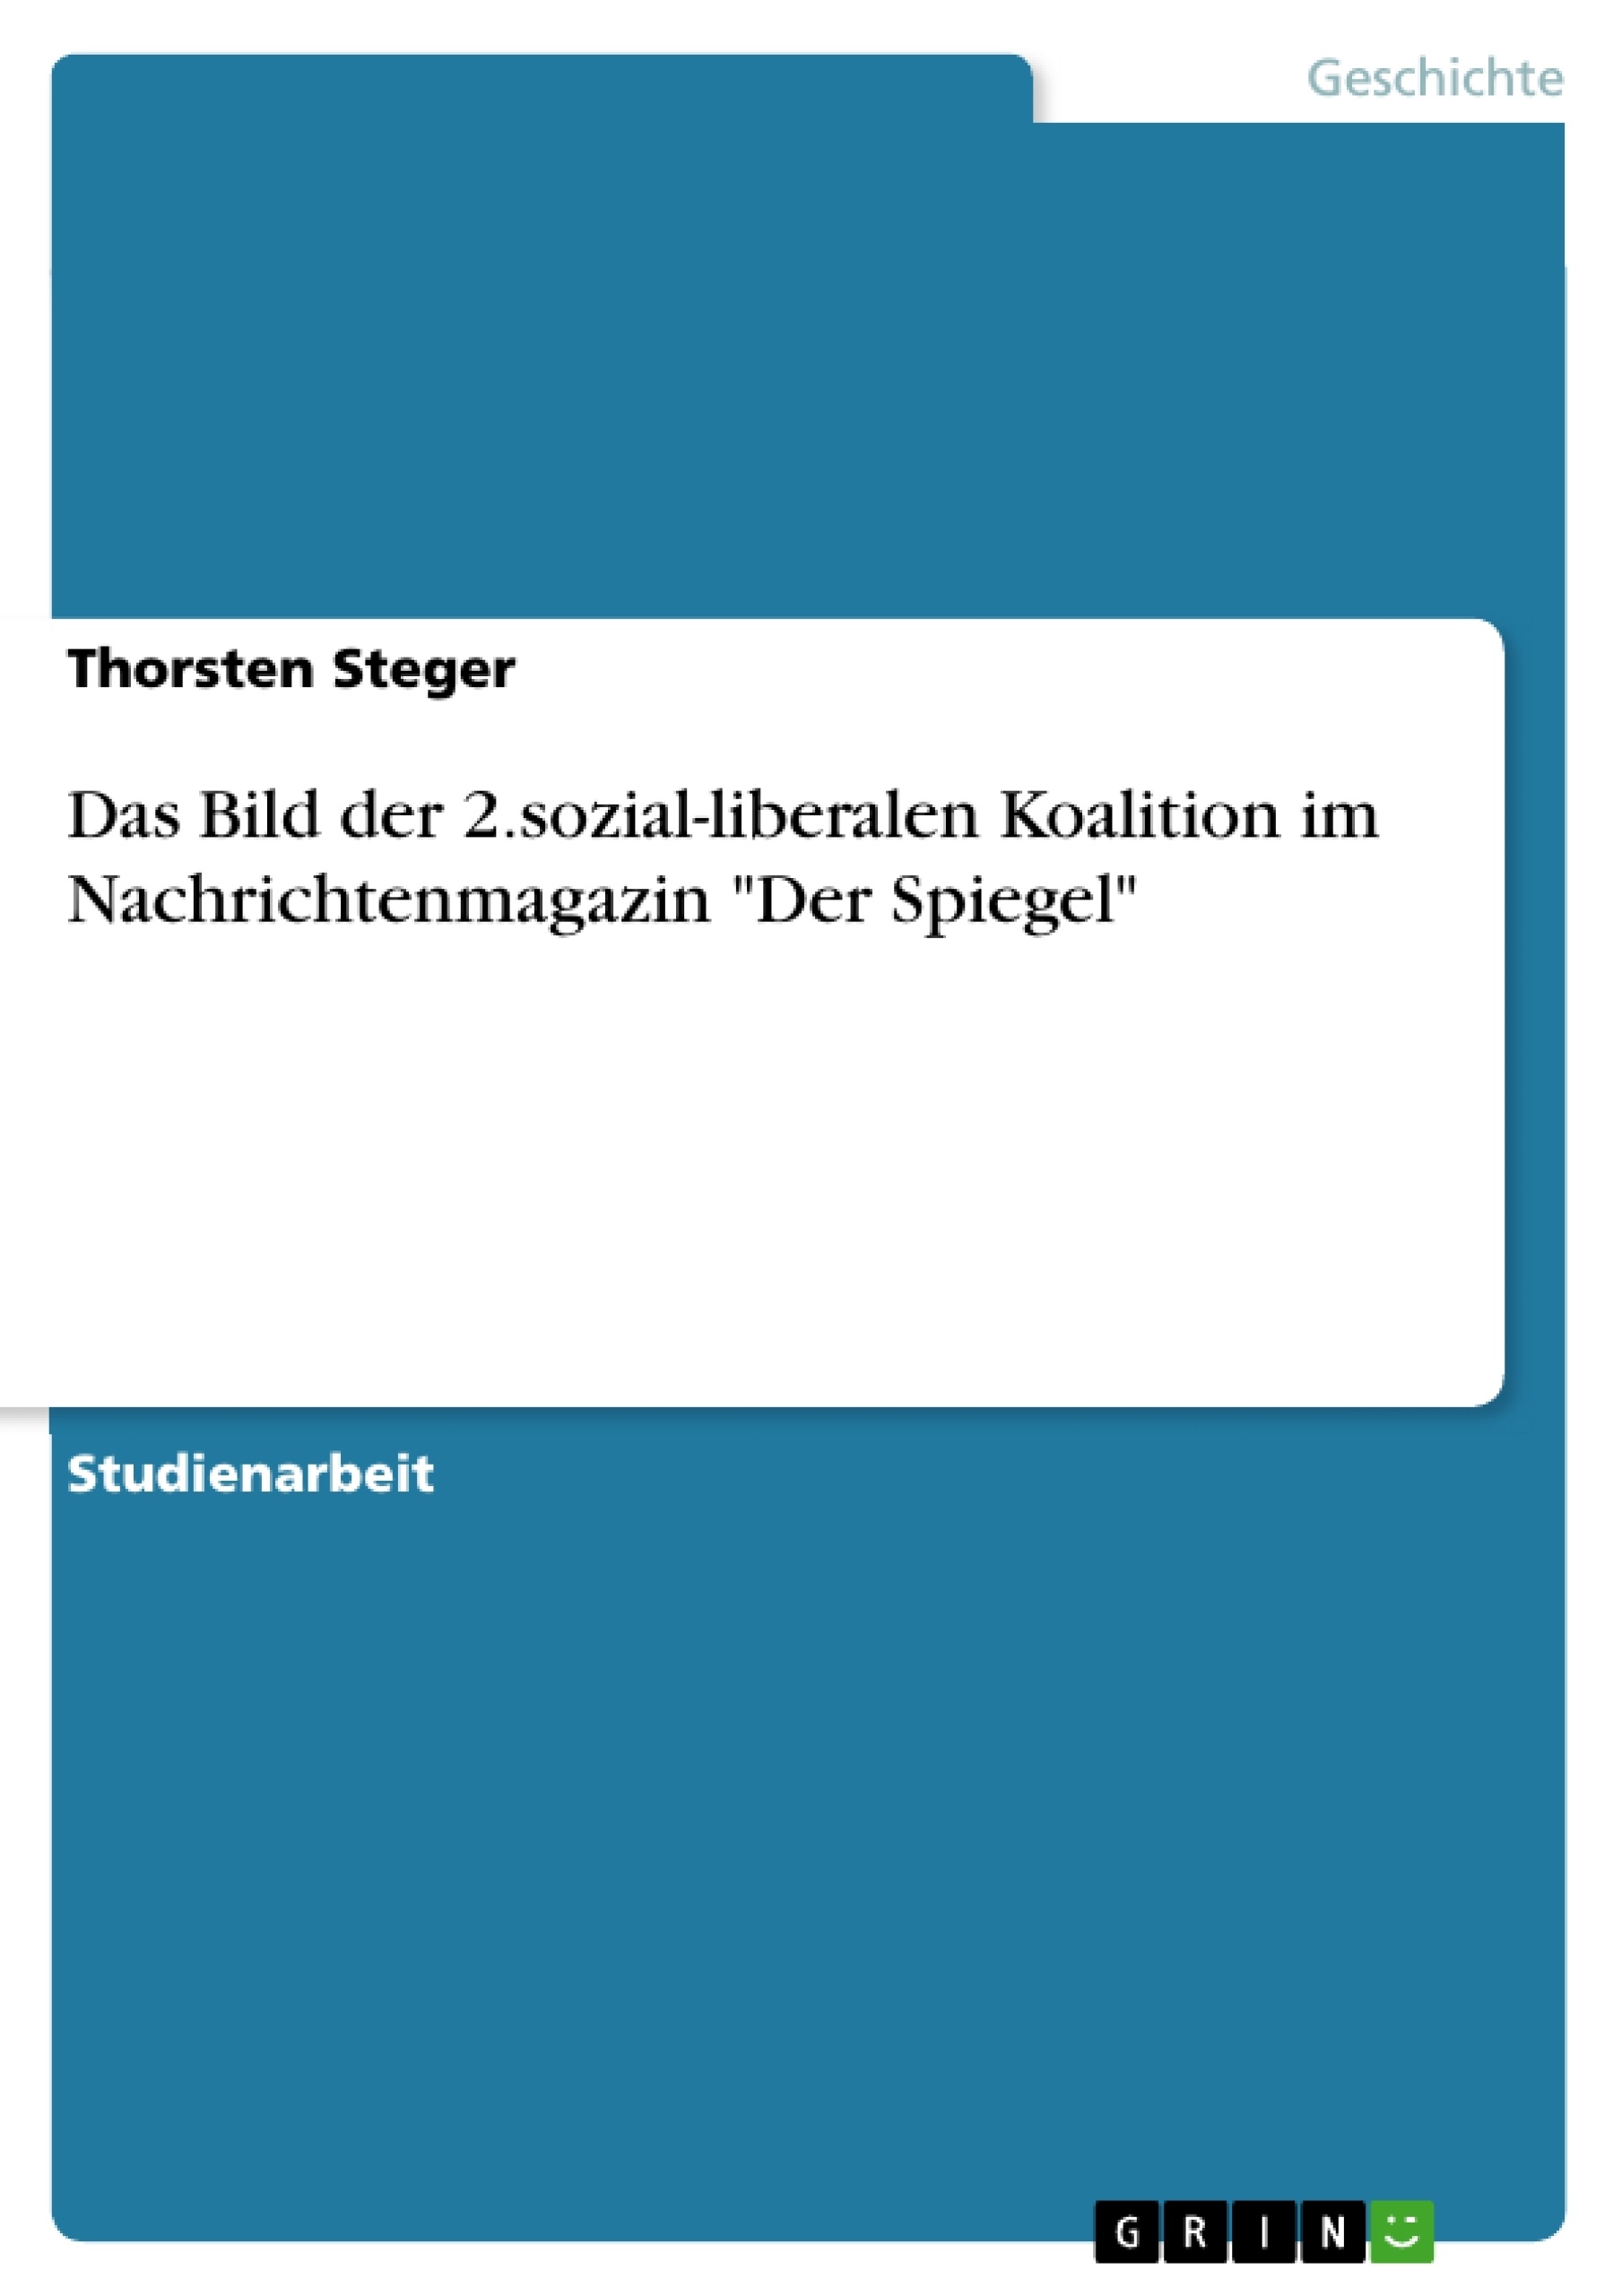 Titre: Das Bild der 2.sozial-liberalen Koalition im Nachrichtenmagazin "Der Spiegel"